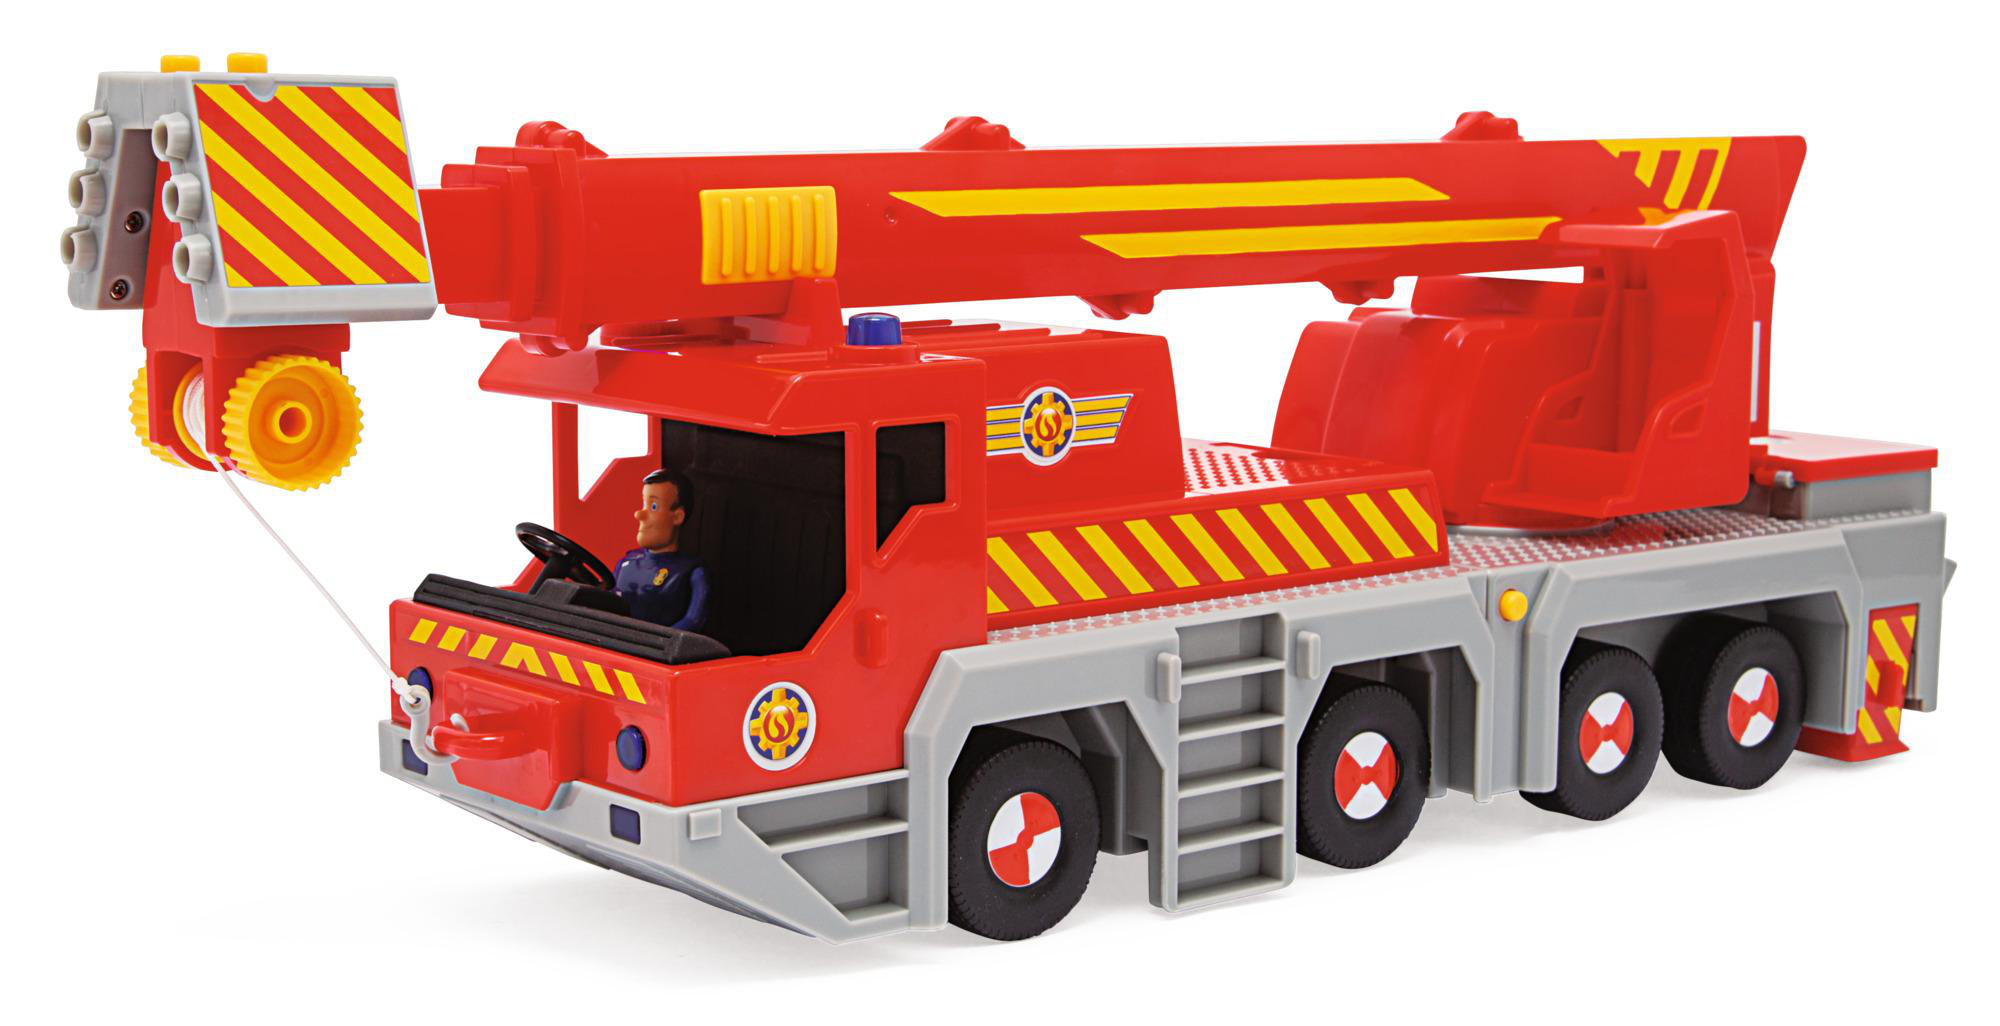 Rettungskran SIMBA Sam Spielzeugauto TOYS Feuerwehrmann Mehrfarbig 2-in-1